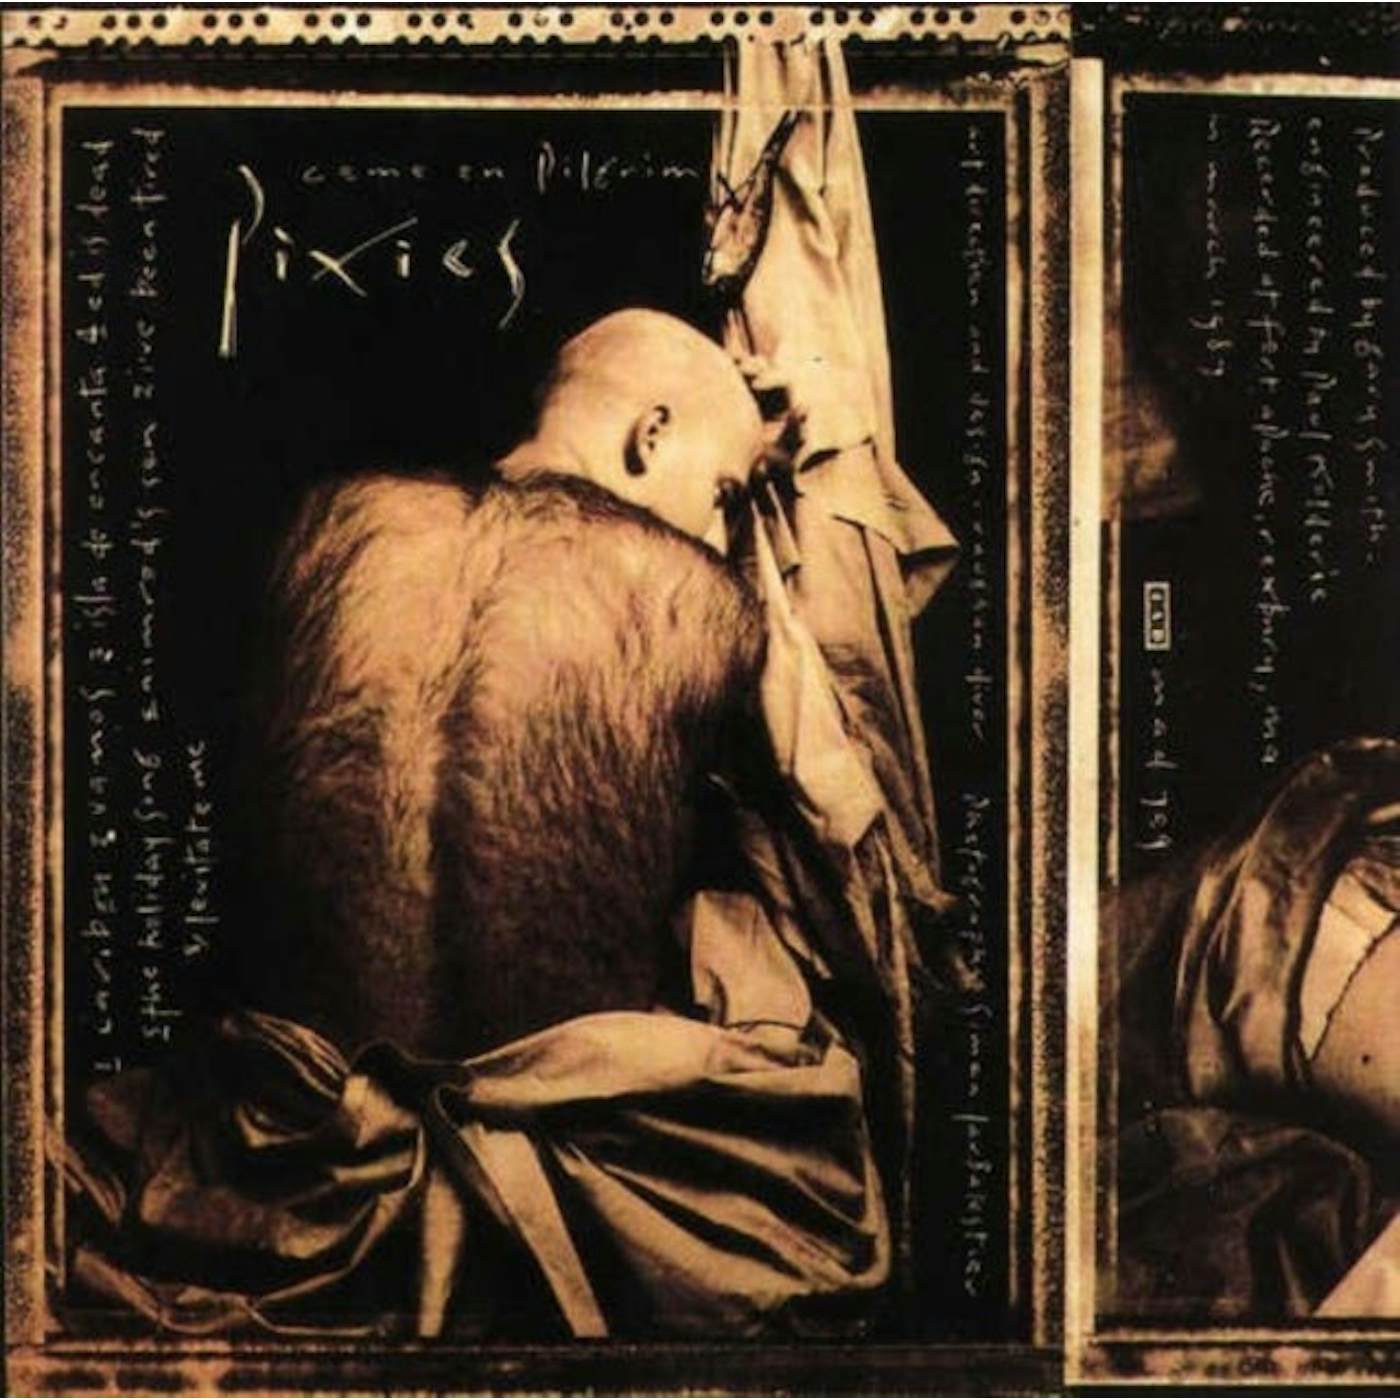 Pixies LP - Come On Pilgrim (Vinyl)